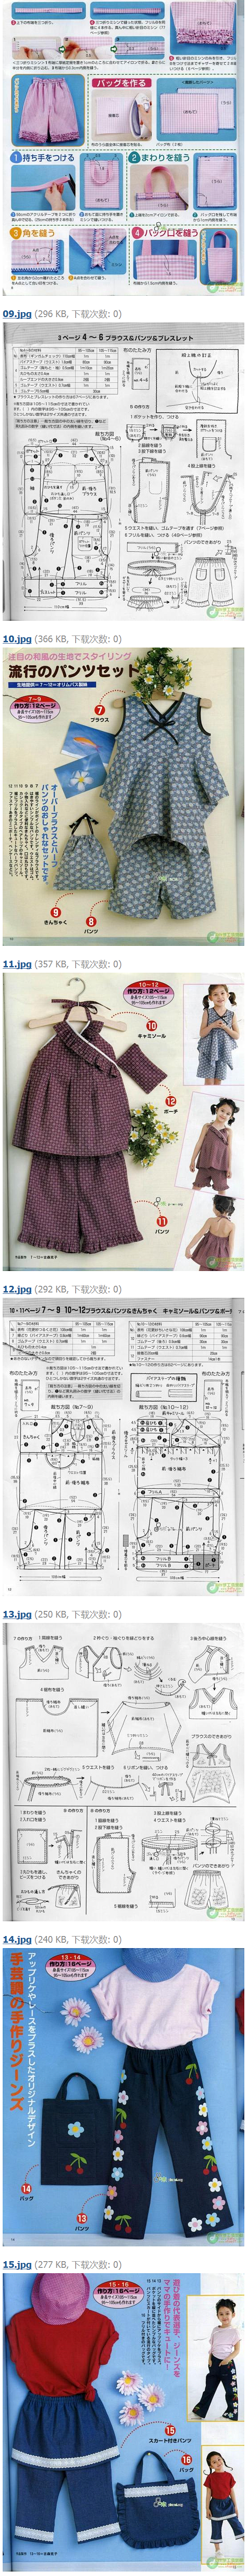 童装-棉布儿童服装 服装设计与剪裁技术交...